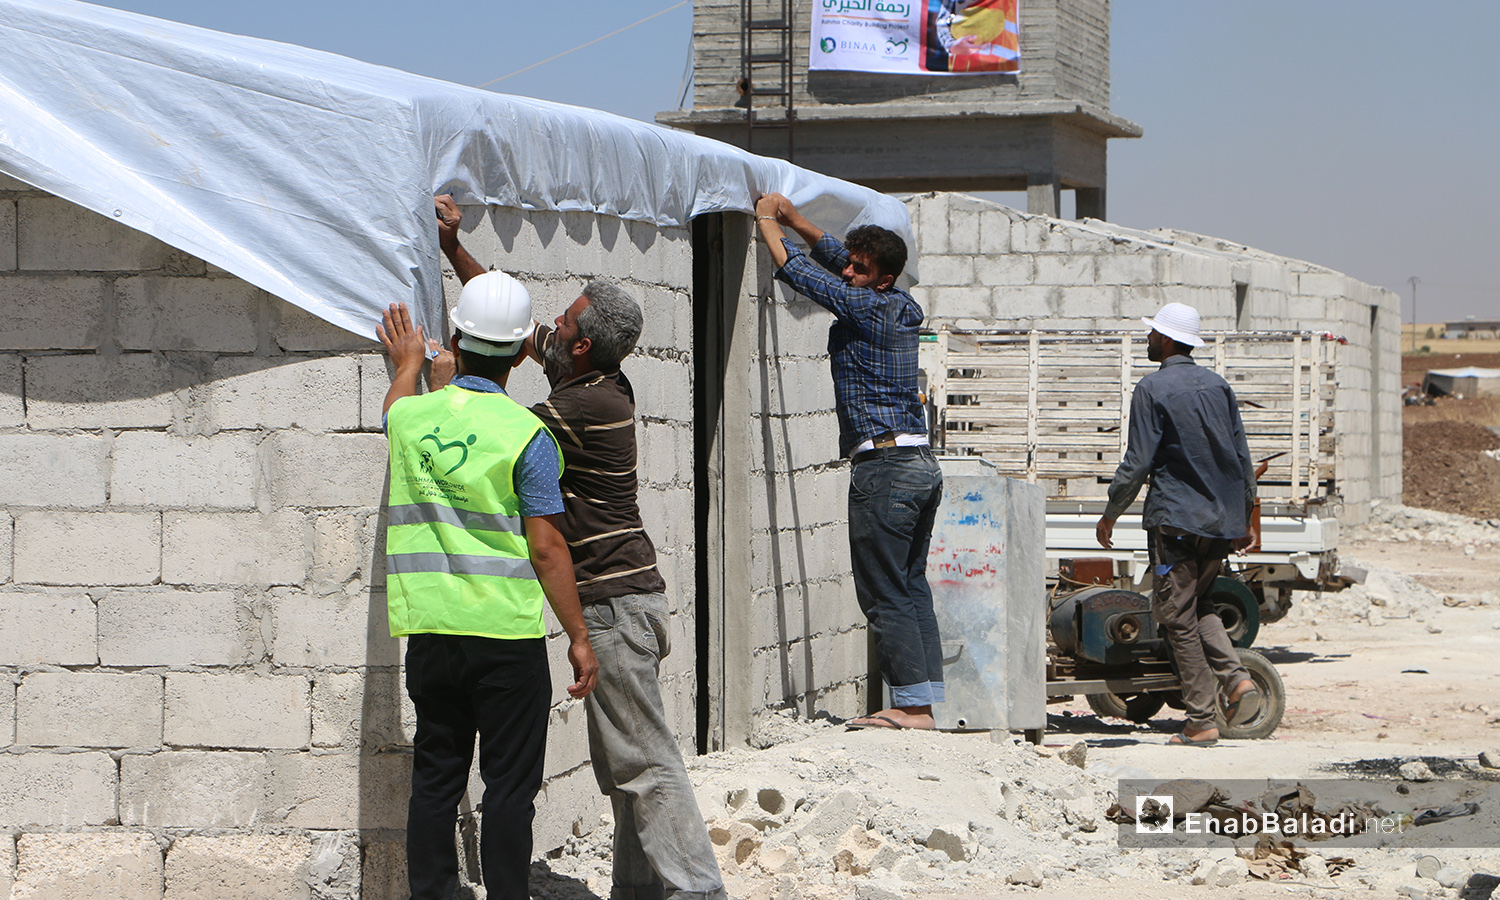 عمال بناء ضمن مشروع الكتل السكنية عوضًا عن الخيام في قرية بحورته بريف حلب الشمالي - 26 حزيران 2020 (عنب بلدي/عبد السلام مجعان)
